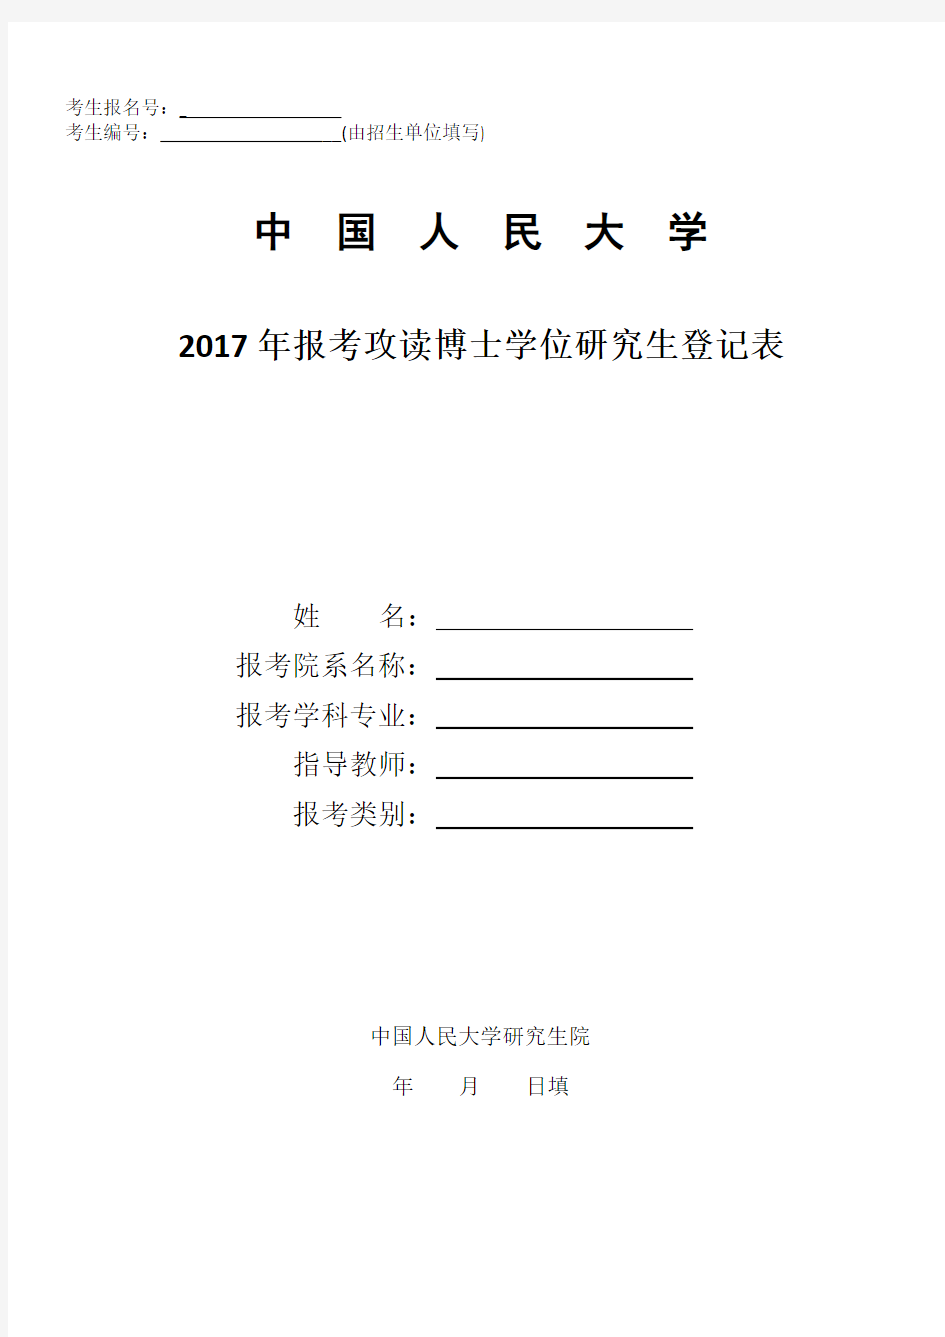 2017年报考攻读博士学位研究生登记表封面和封底